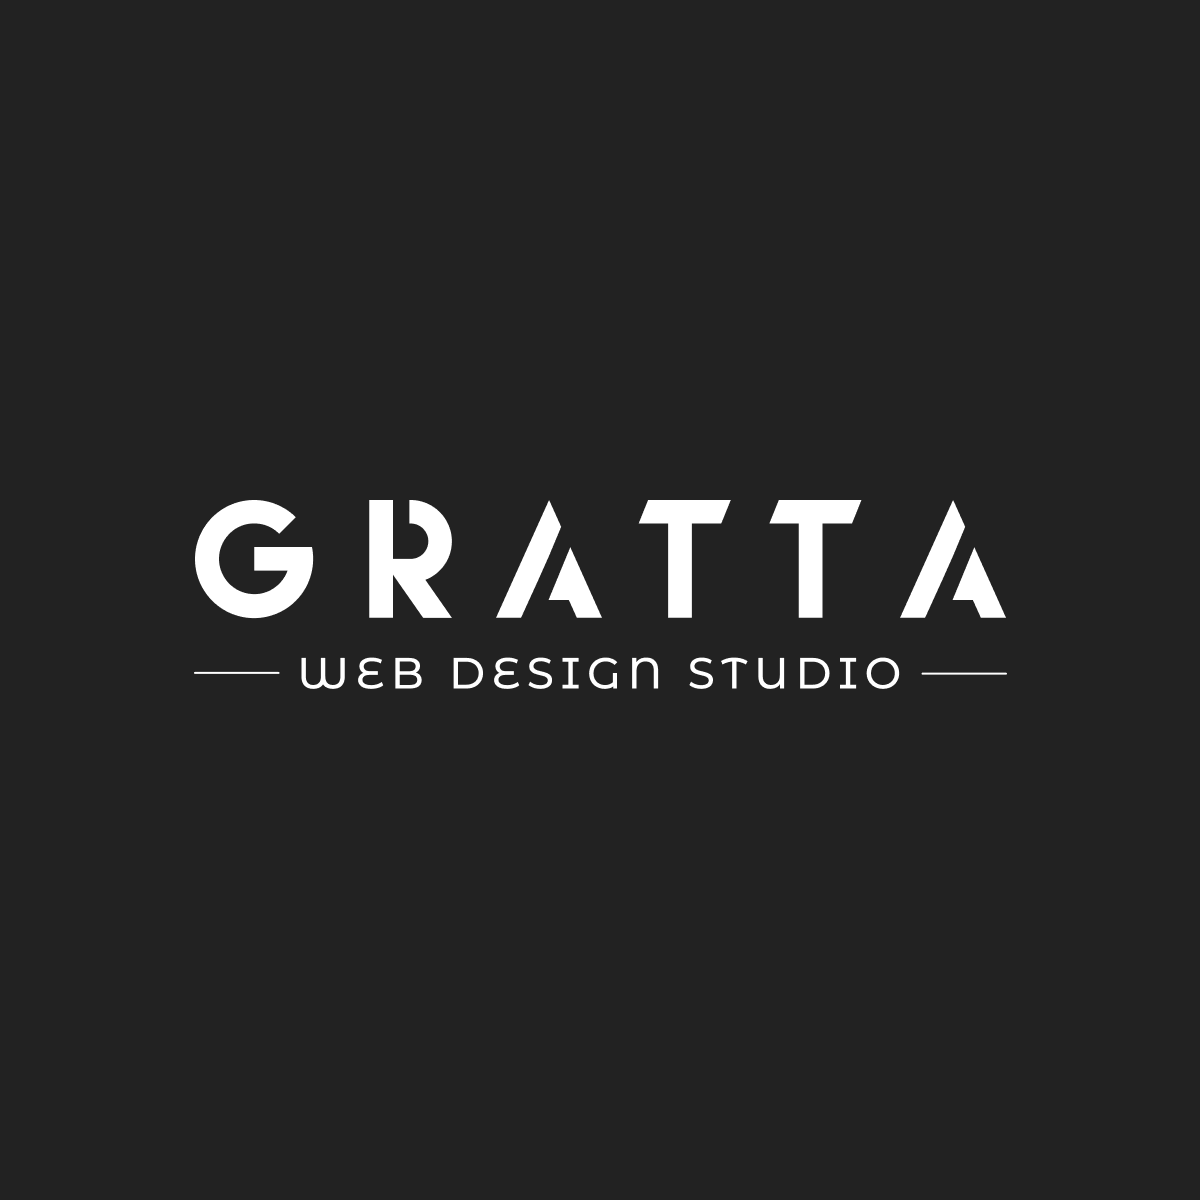 Gratta Web Design Studio Welcome